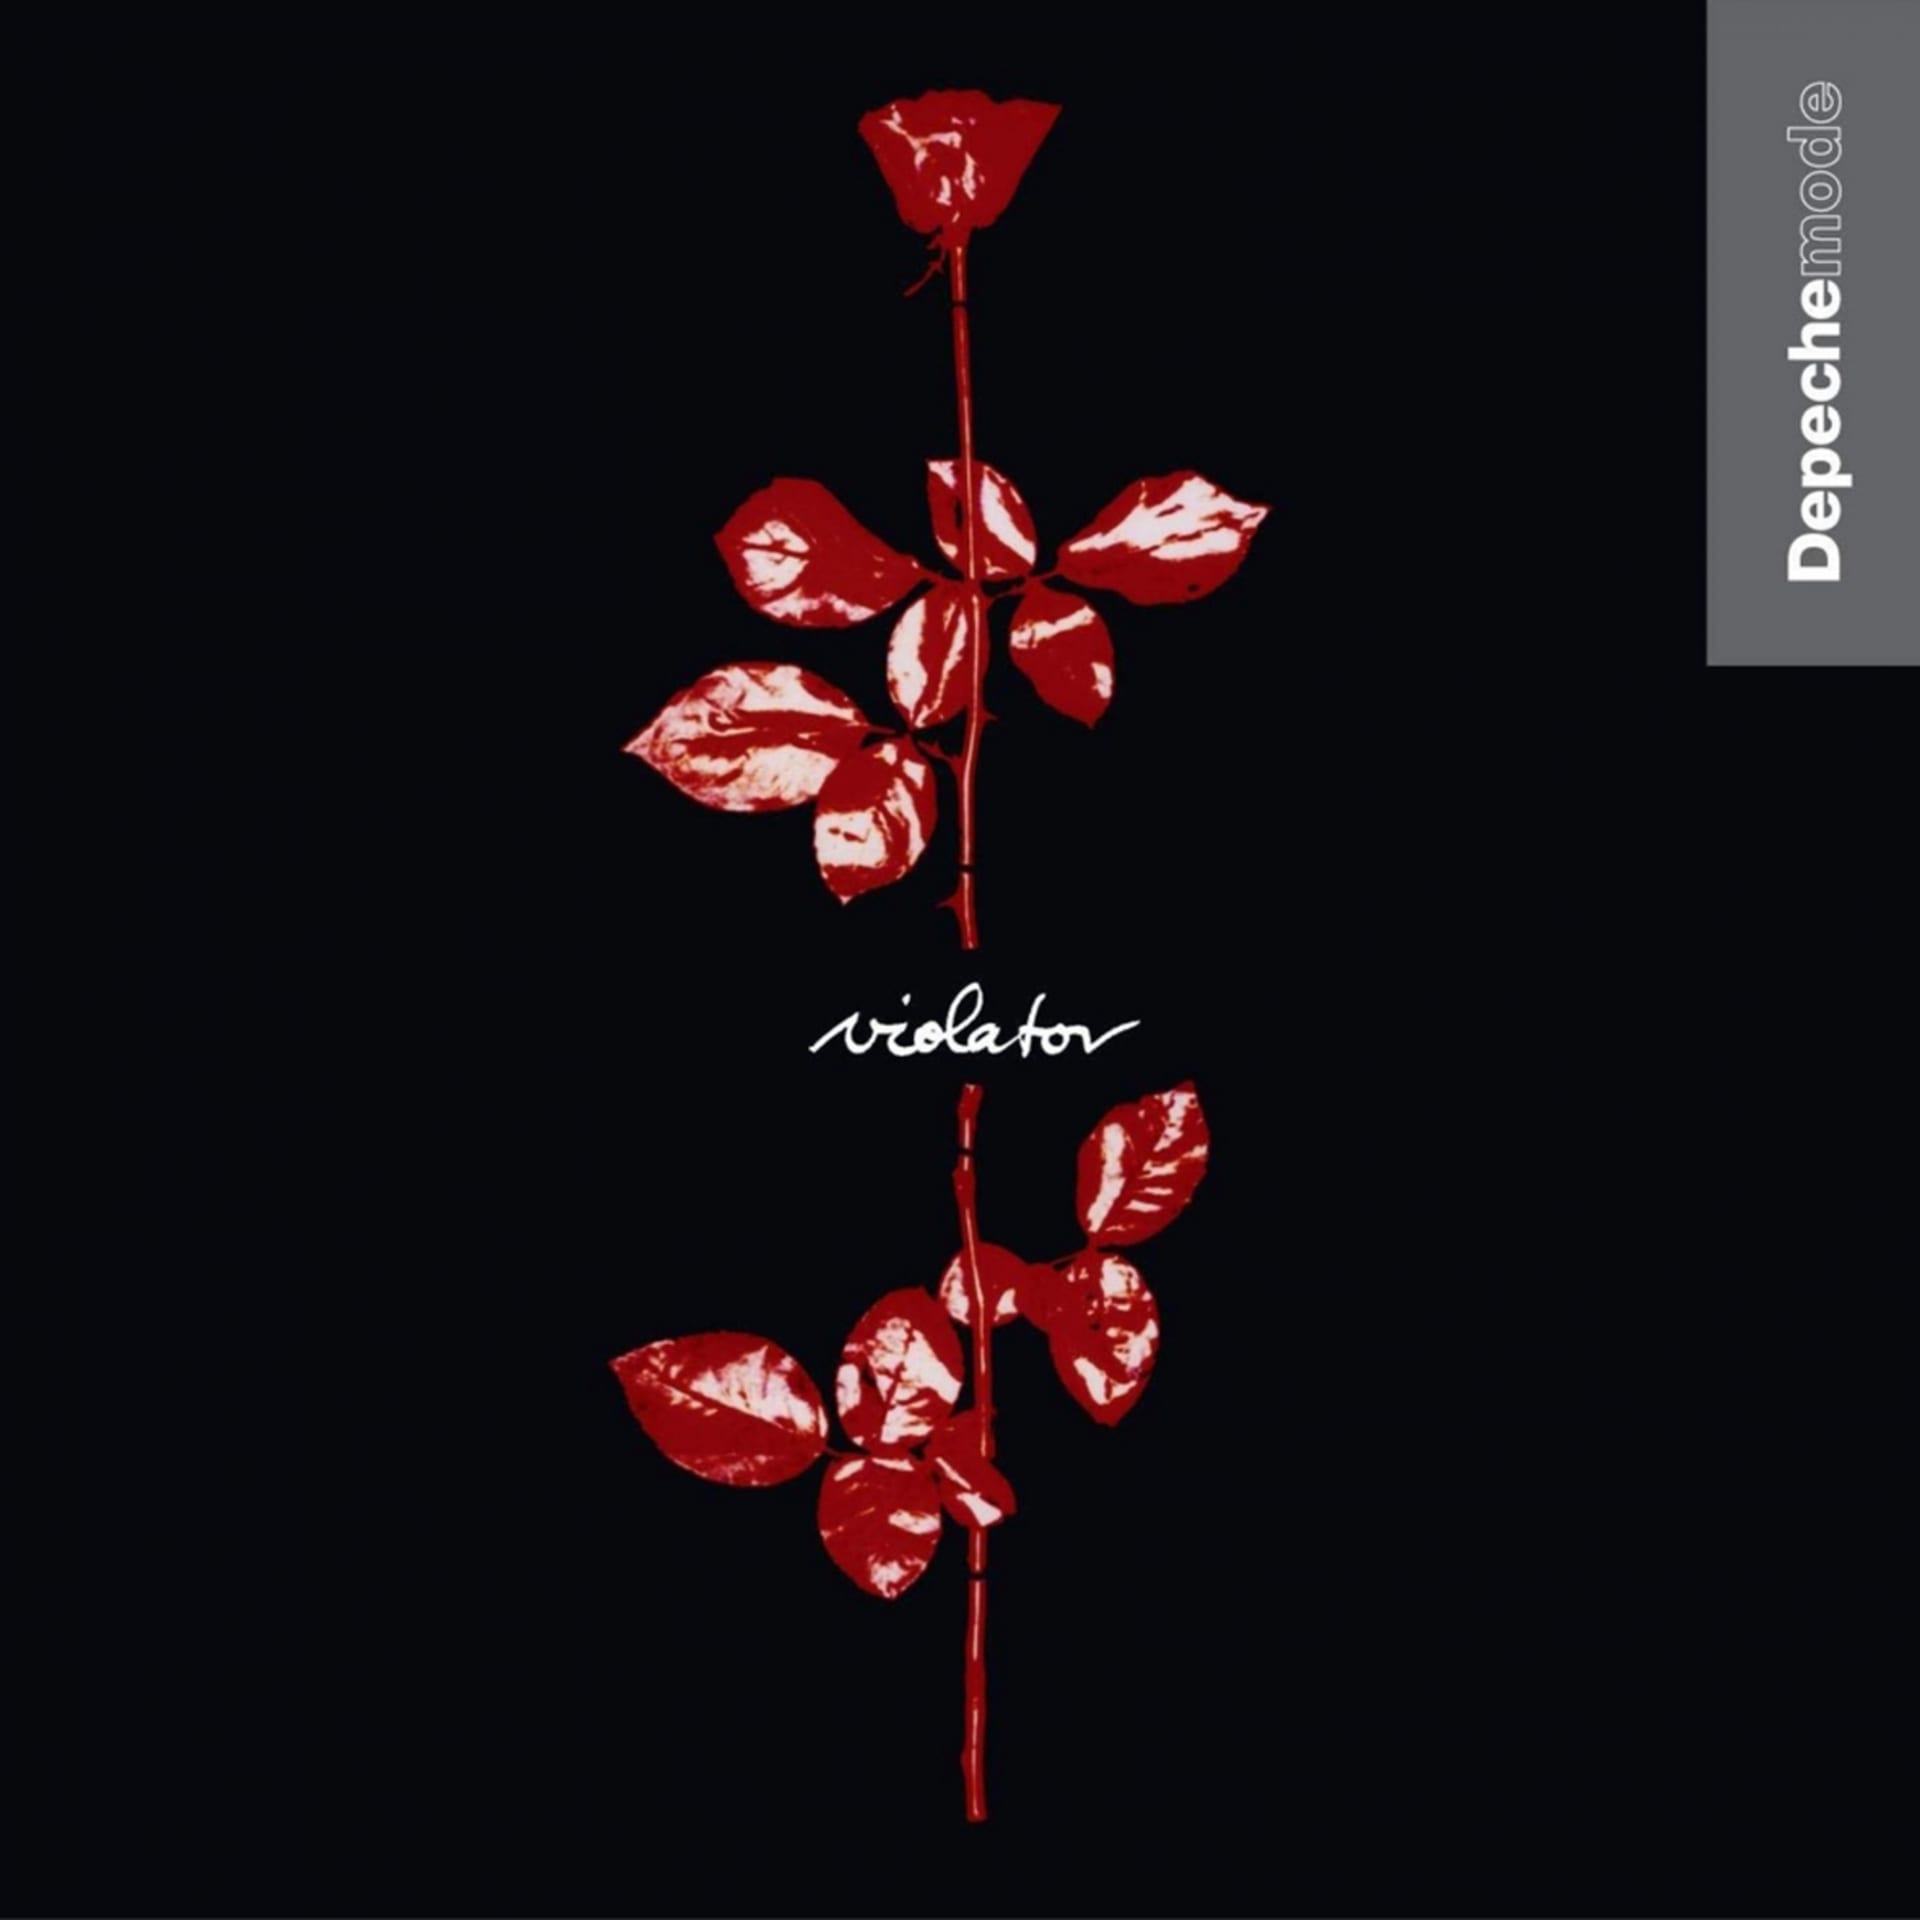 Letos uplynulo třicet let od vydání nejspíš nejpovedenějšího alba Depeche Mode Violator.